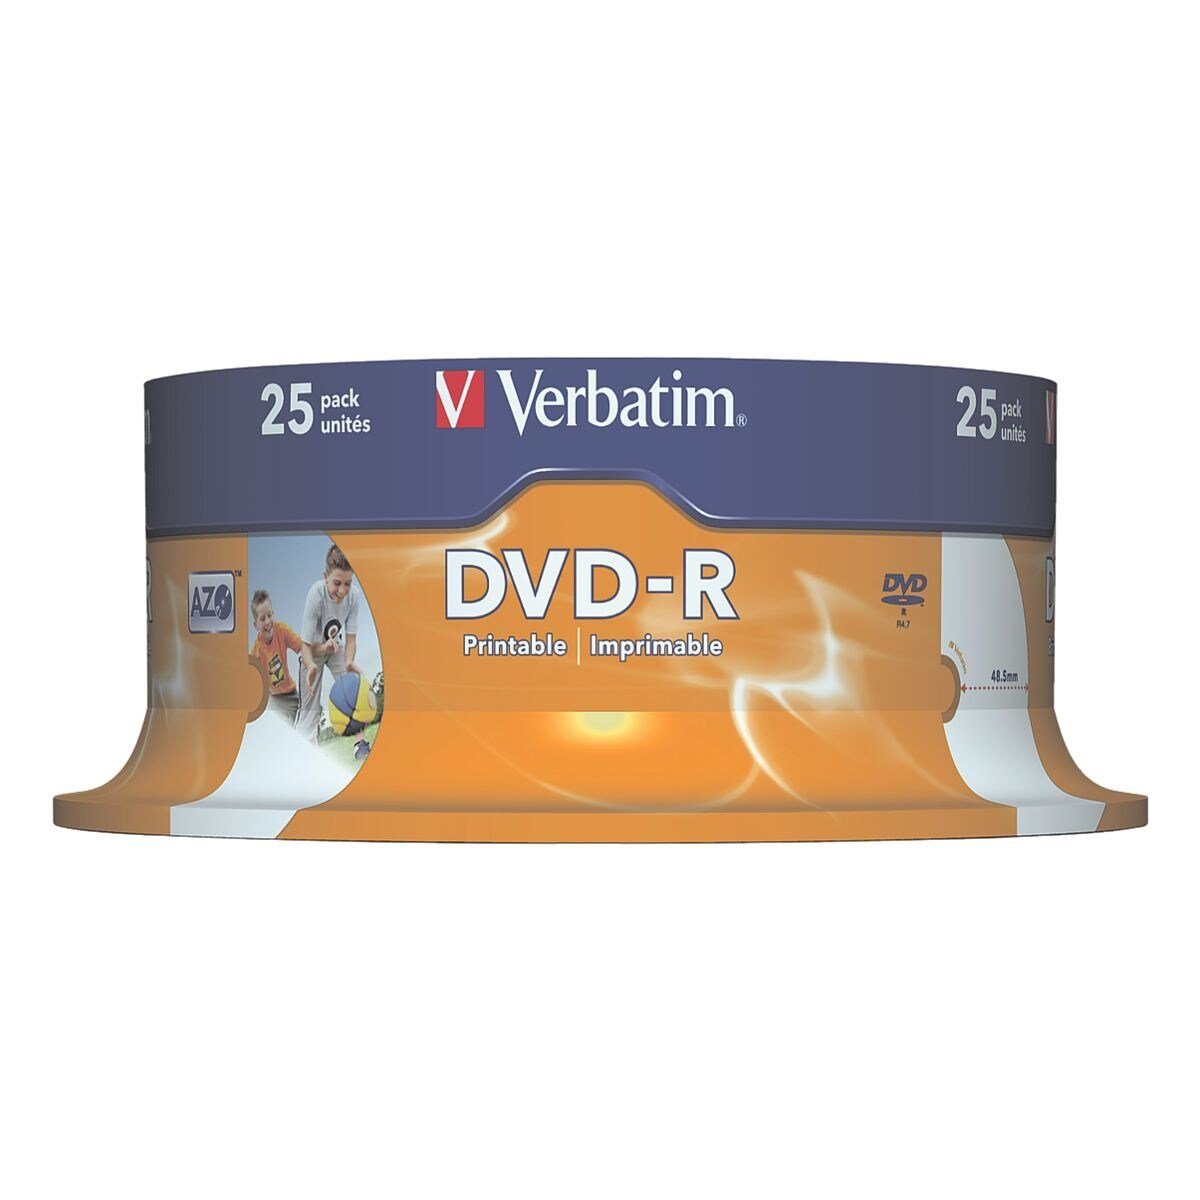 Verbatim DVD-Rohling Printable widerstandsfähig 4,7 Feuchtigkeit DVD-R, gegen und bedruckbar, GB, Wasser